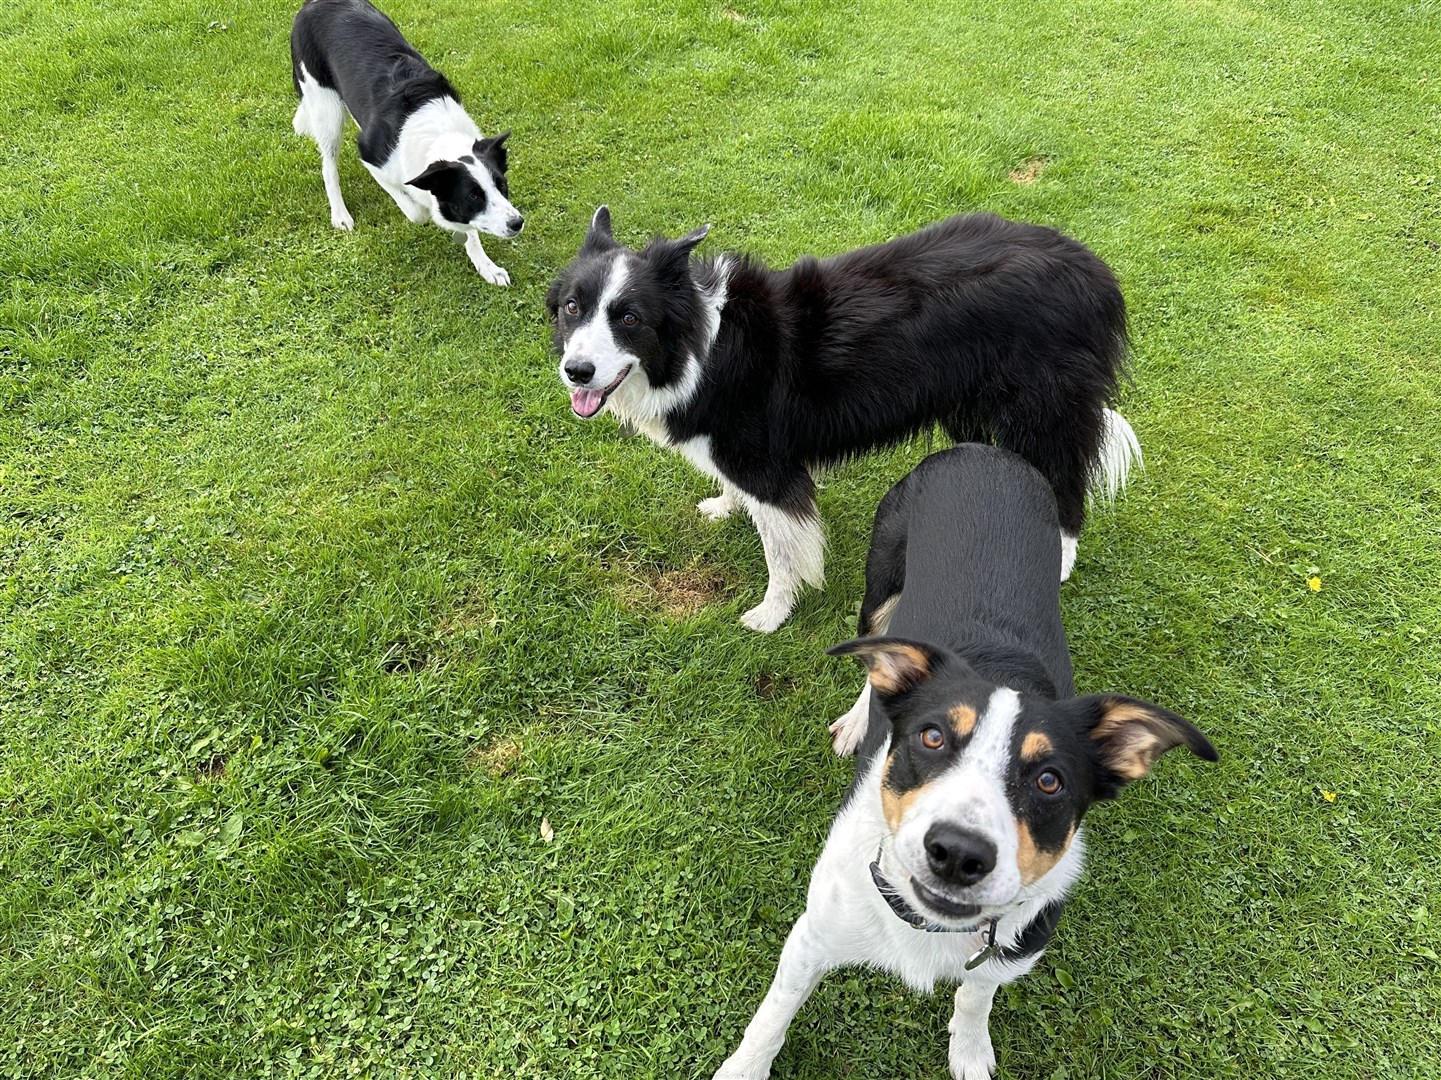 Canine companions are a bonus on the Black Isle.